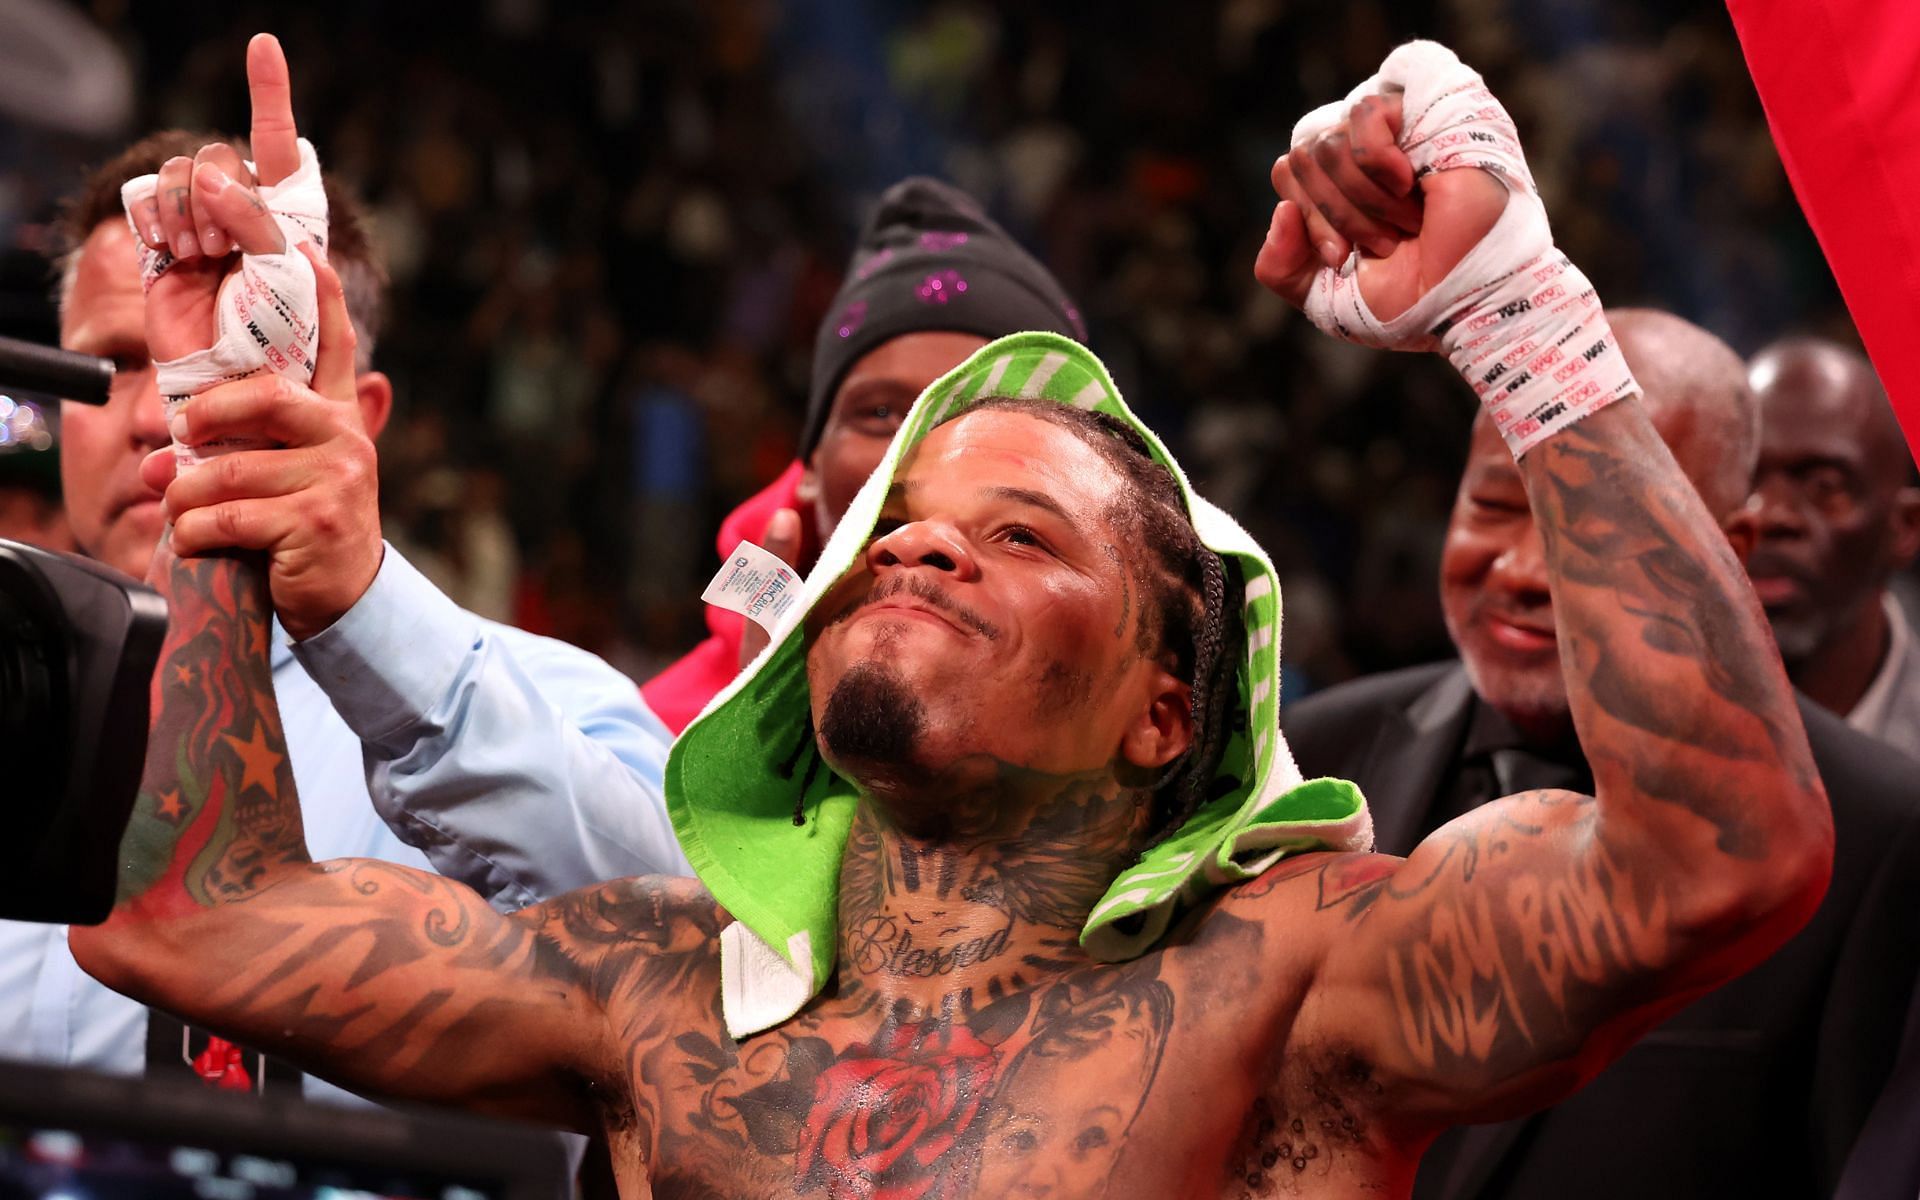 Photos: Gervonta Davis, Mario Barrios - Tense Face To Face at Presser -  Boxing News